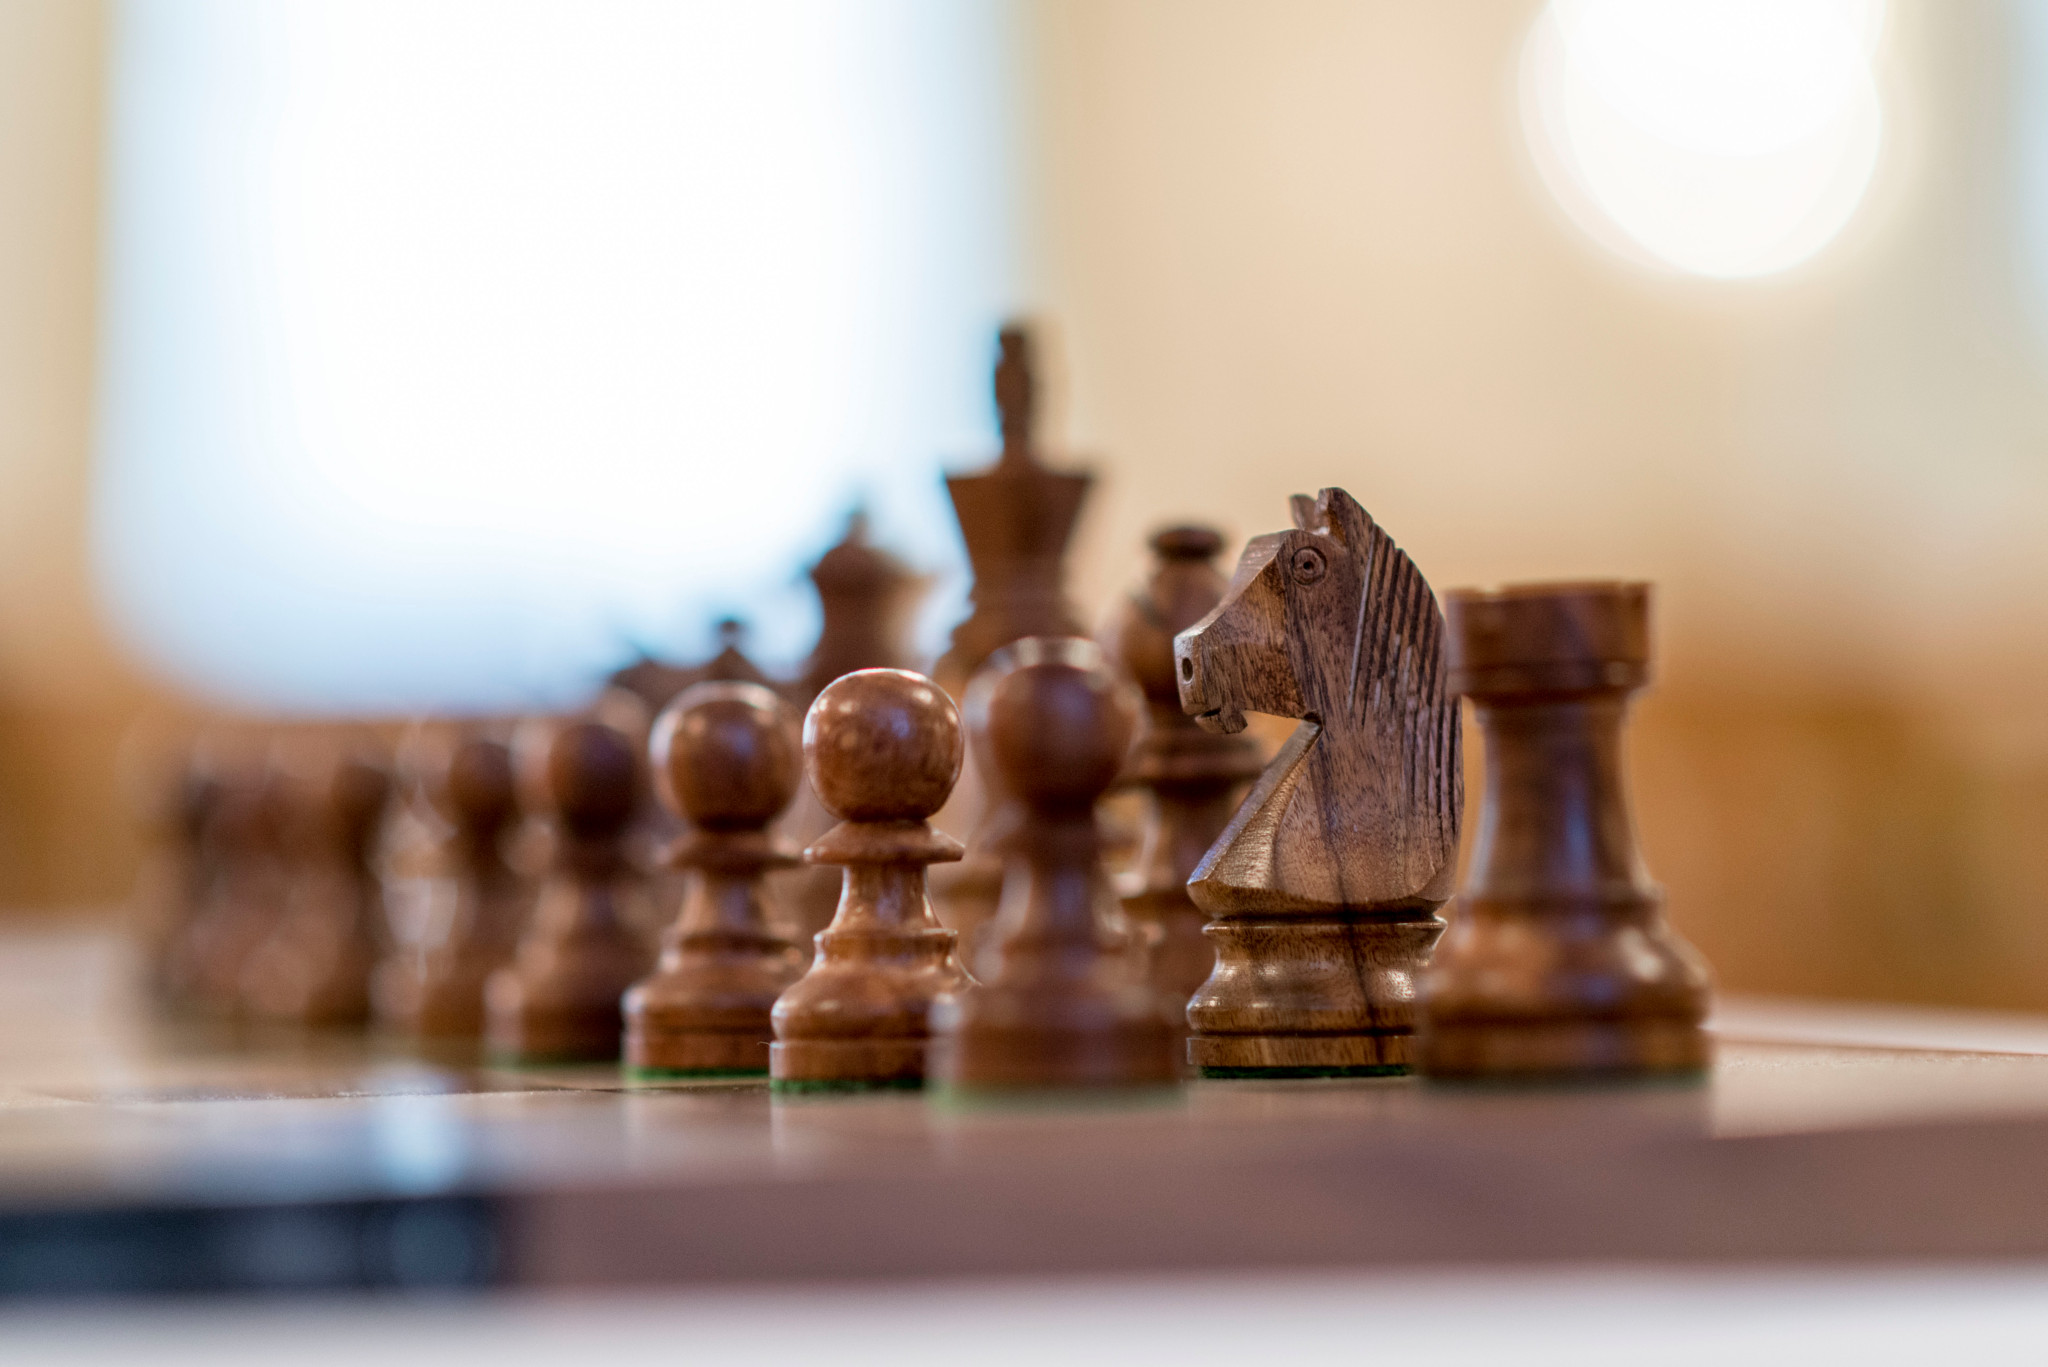 Schach: Zuerich Chess Challange 2014 im Hotel Savoy Baur en Ville in Zuerich.

Die Schach Figuren stehen fuer die bevorstehenden Partien bereit.
